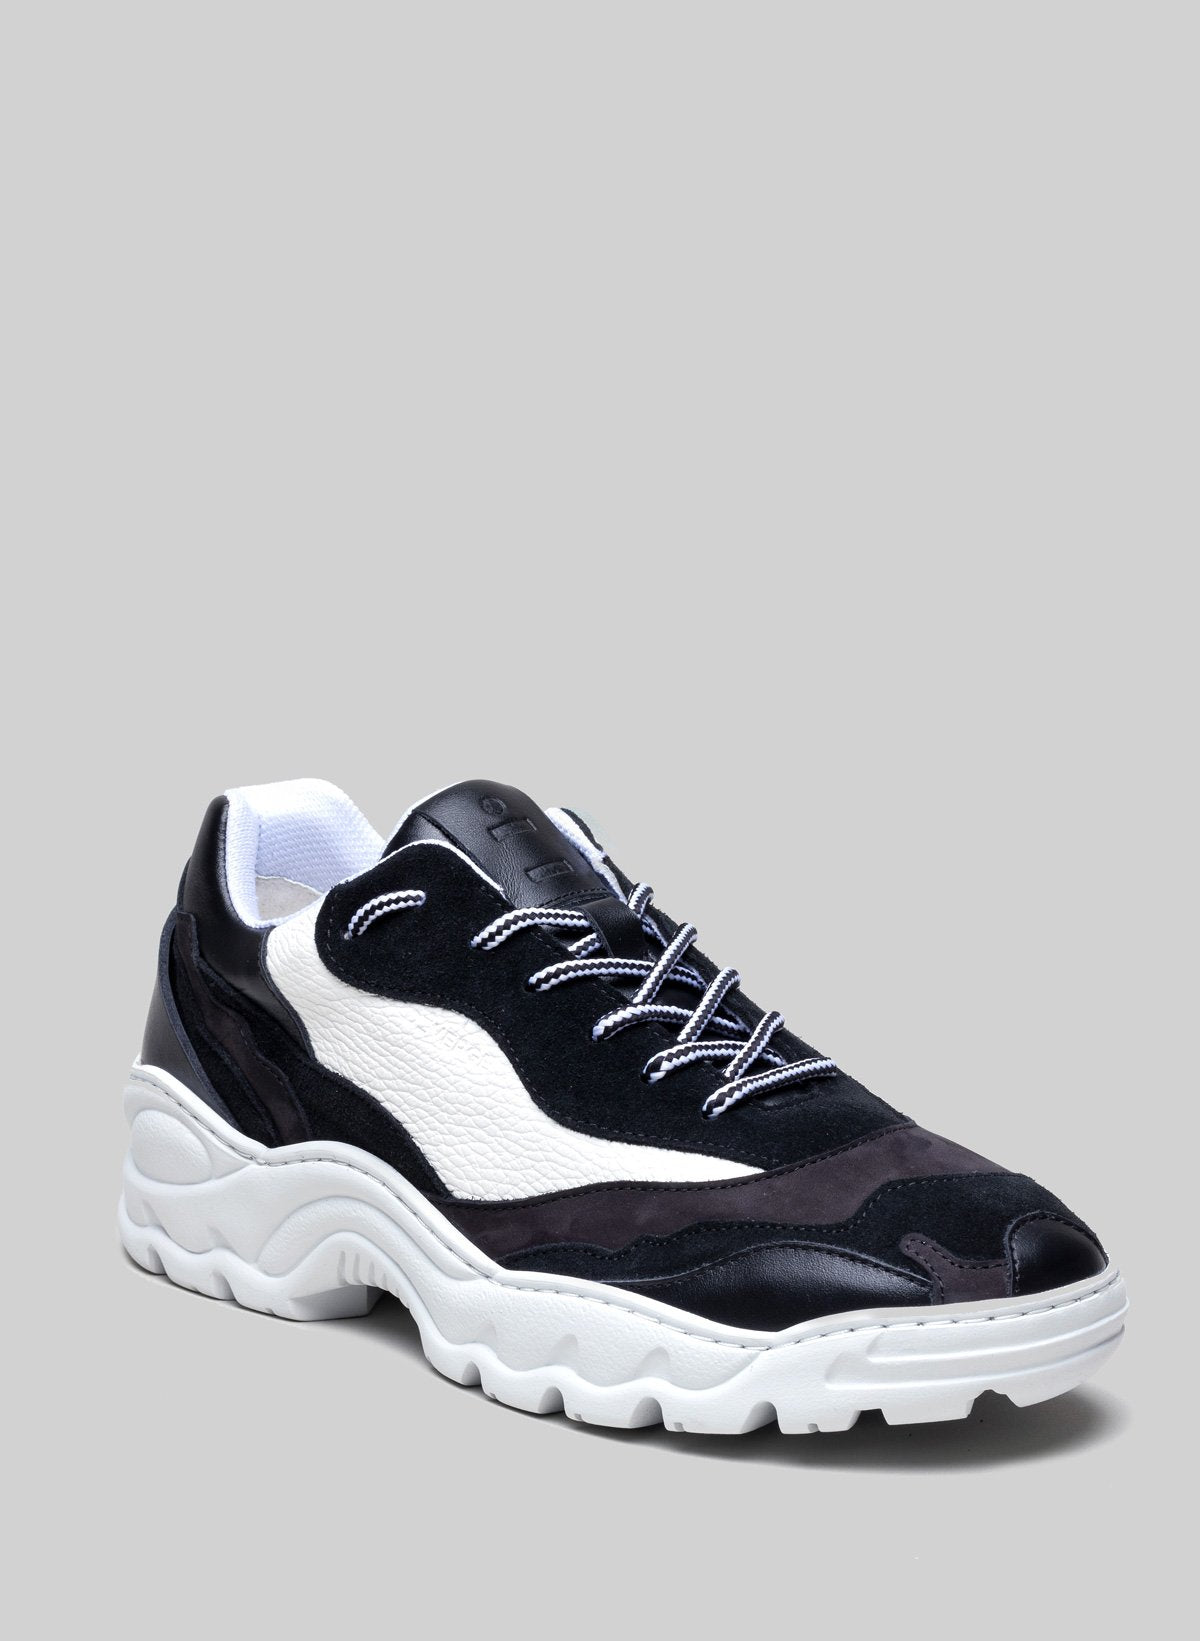 Sneaker in bianco e nero di Diverge, che promuove l'impatto sociale e le scarpe personalizzate.